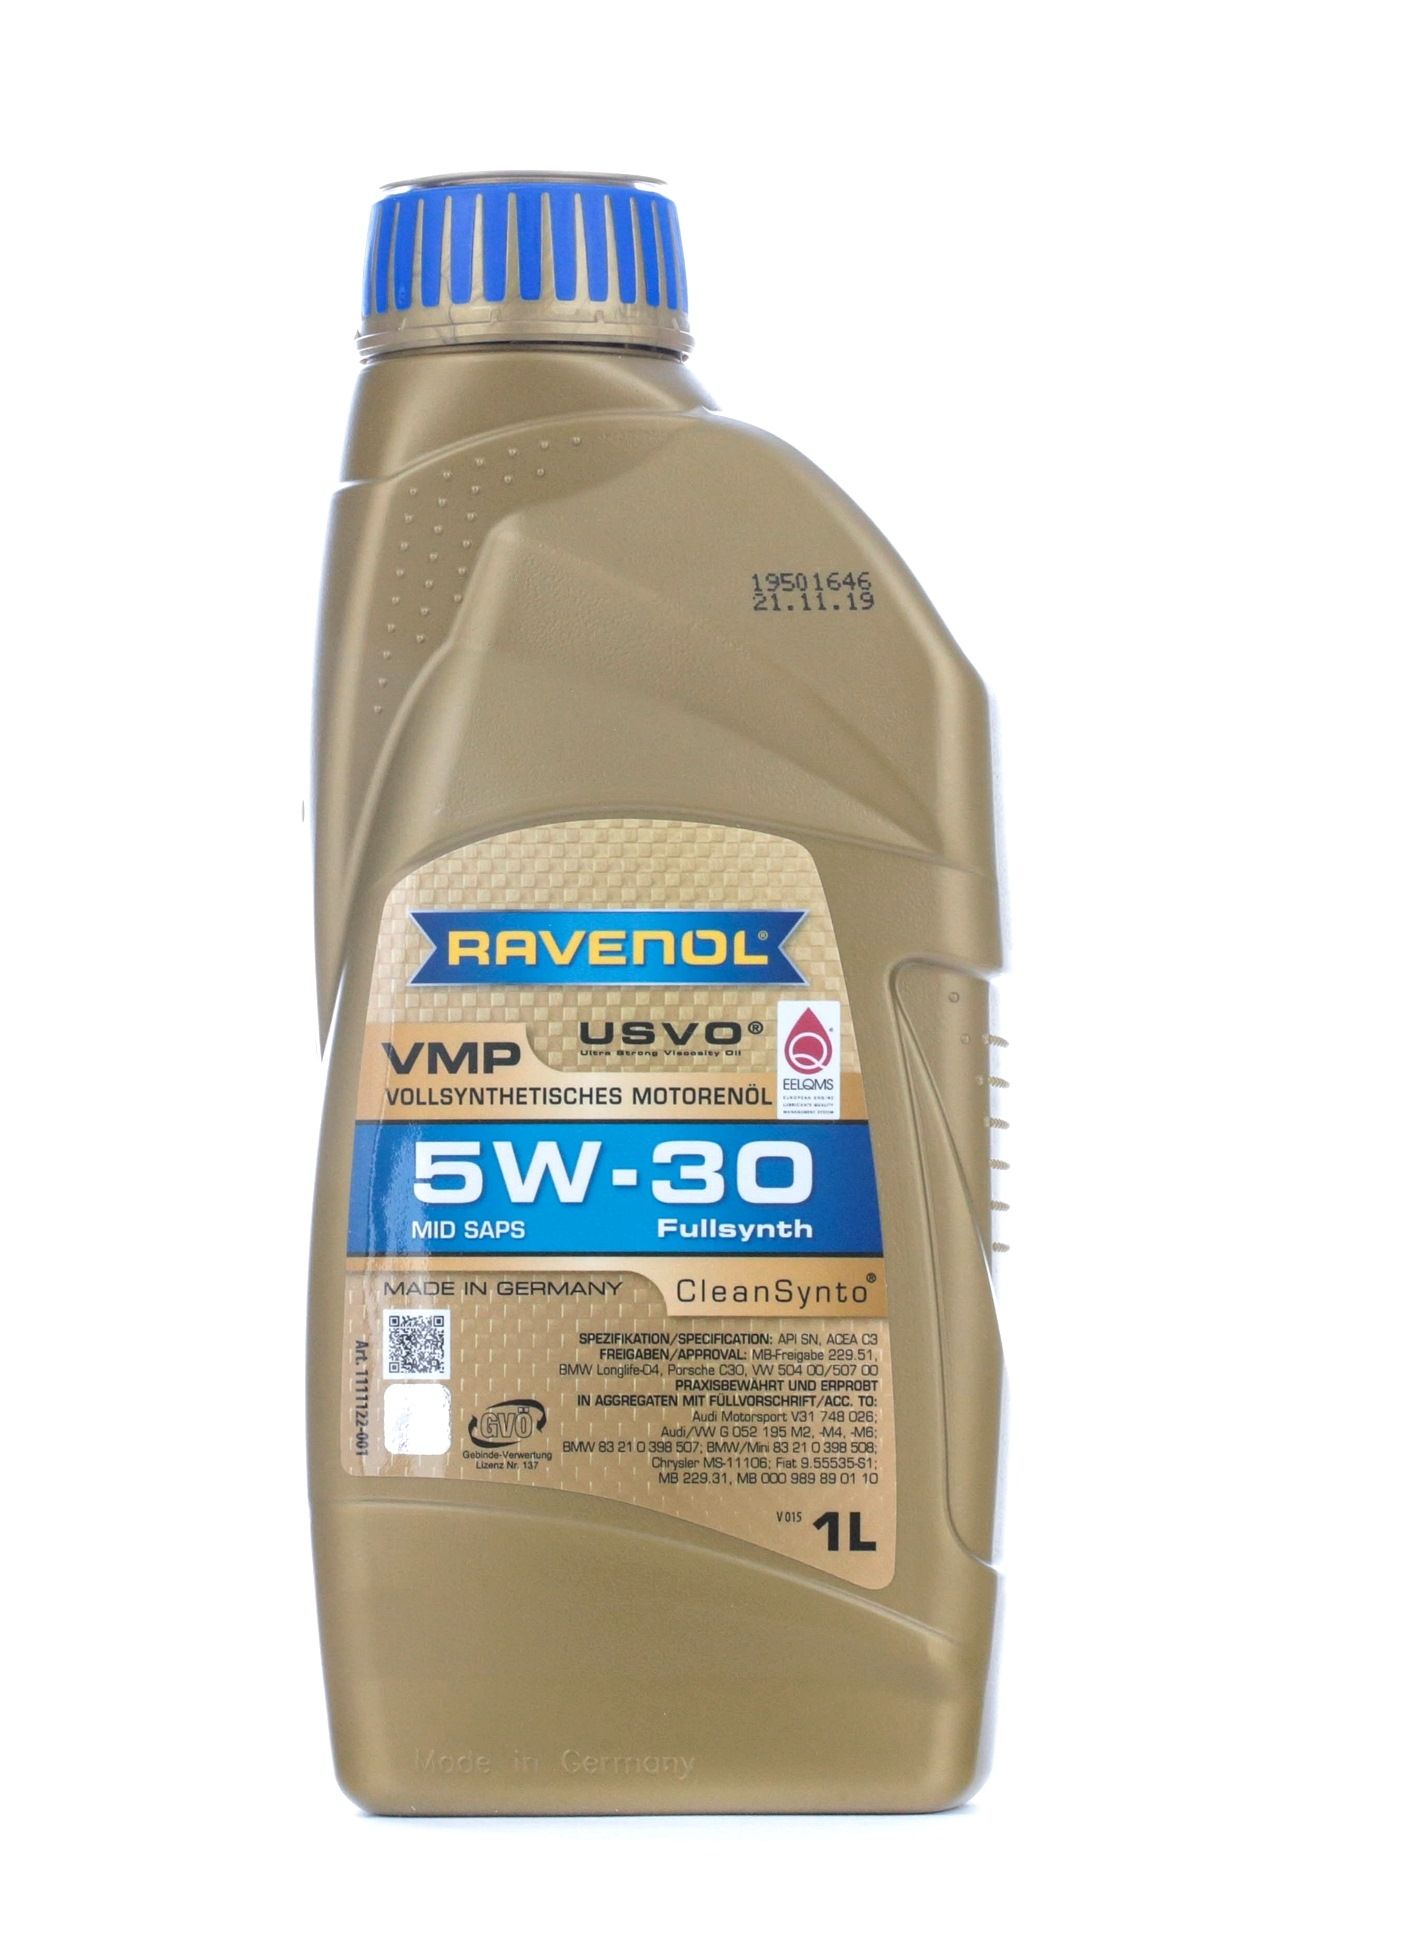 RAVENOL VMP 5W-30, 1l Motor oil 1111122-001-01-999 buy